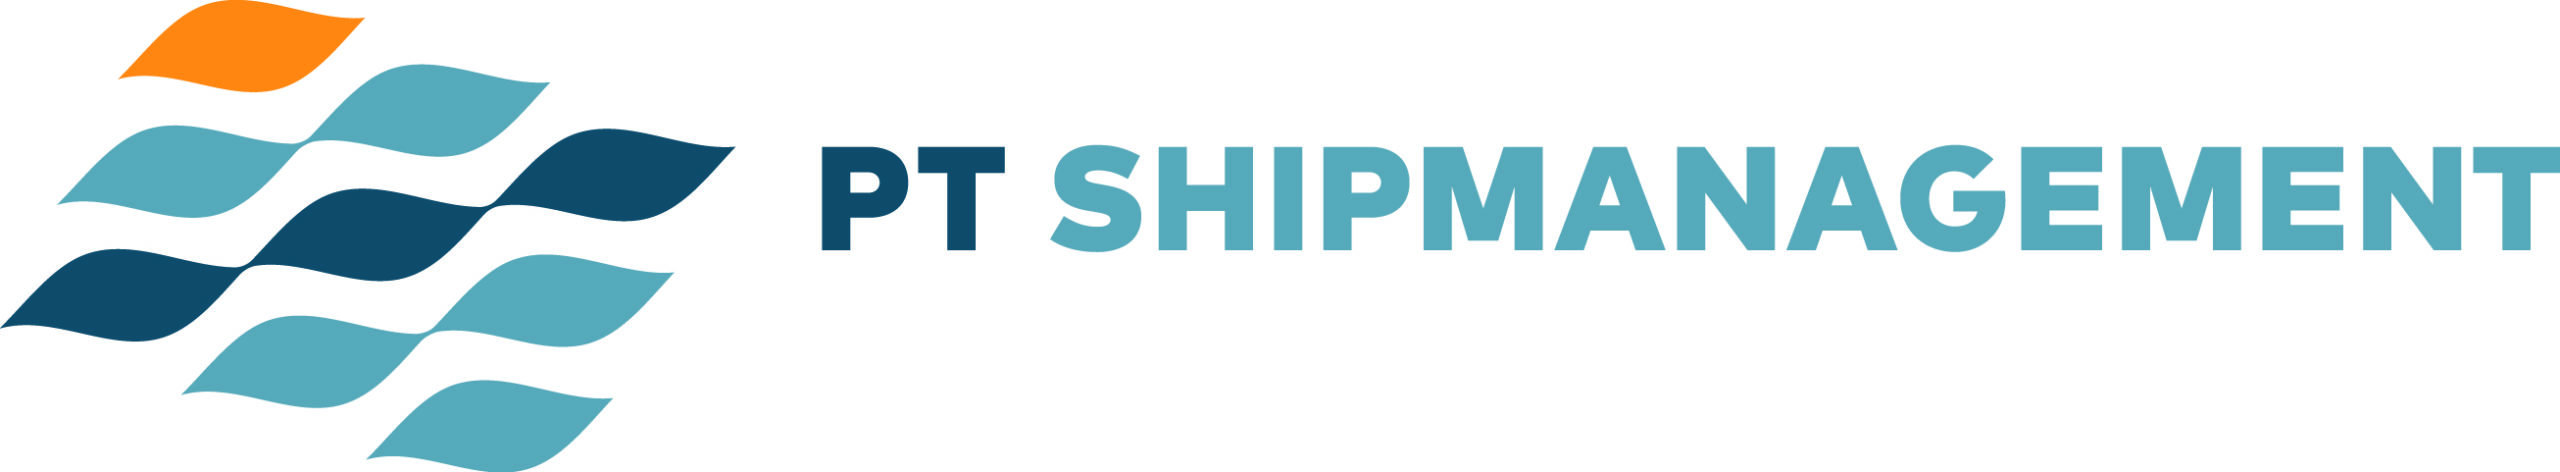 PT-SHIPMANAGEMENT GMBH